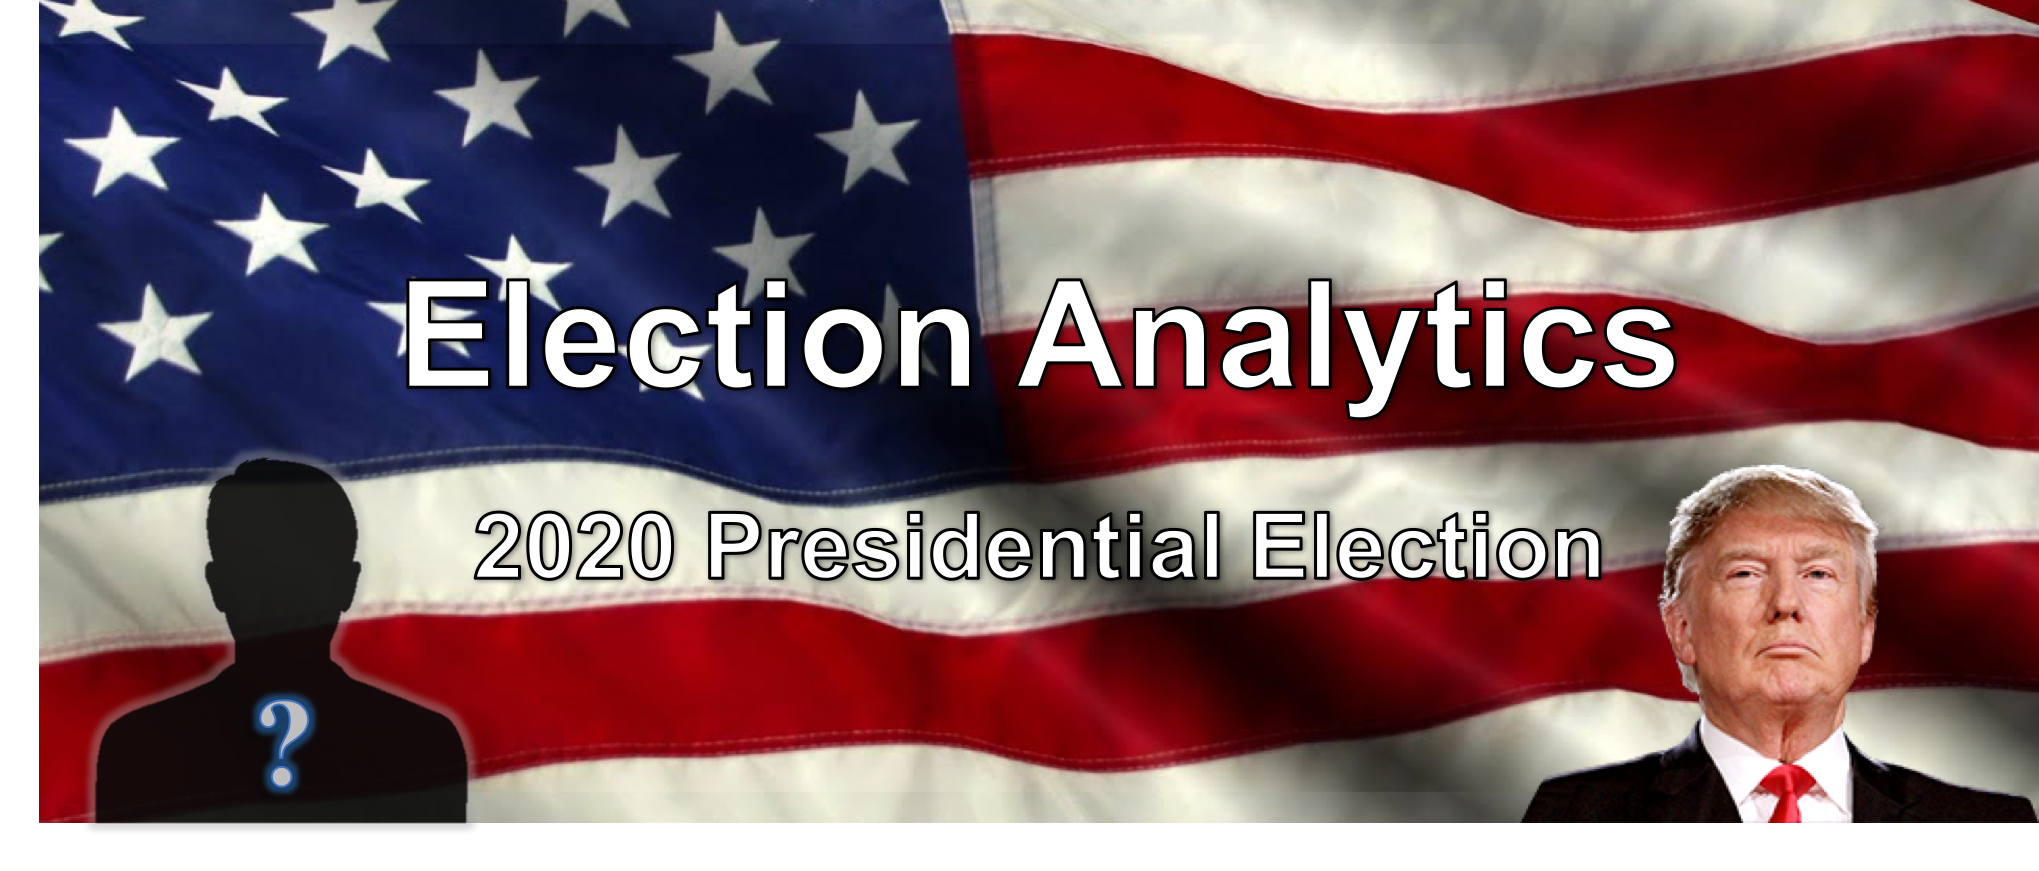 Summary 2016 | Election Analytics @ Illinois